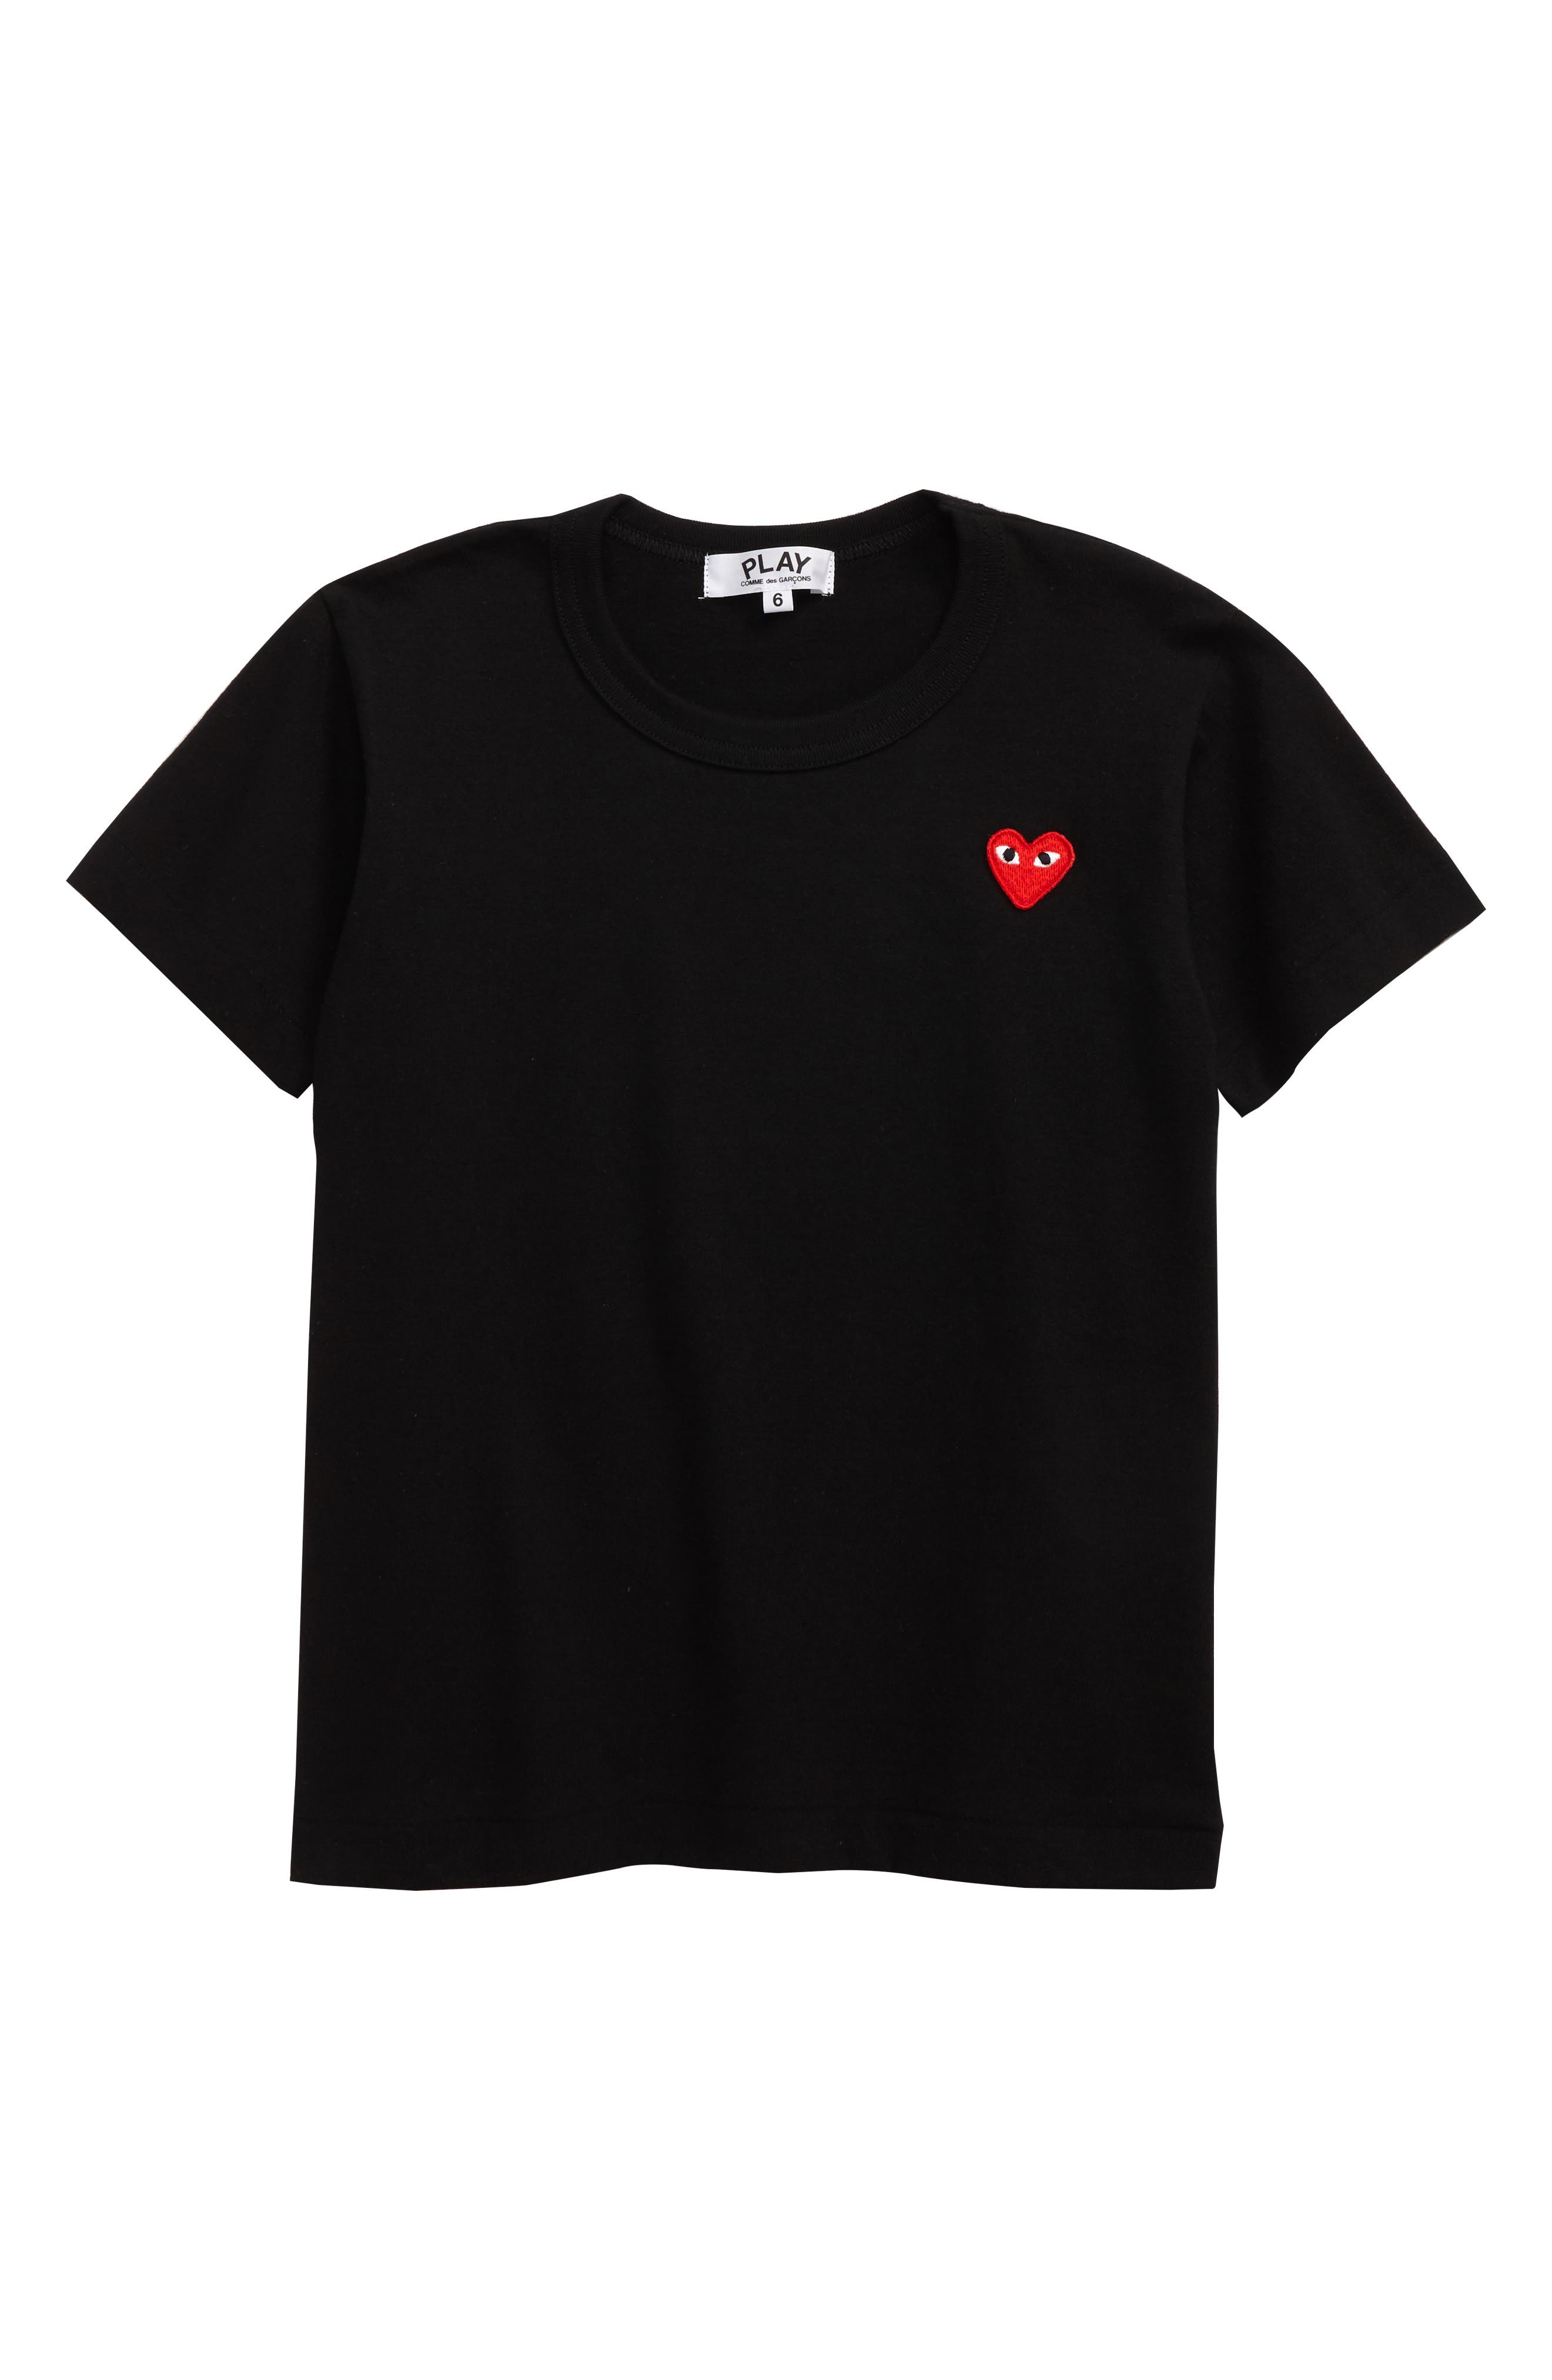 converse heart shirt